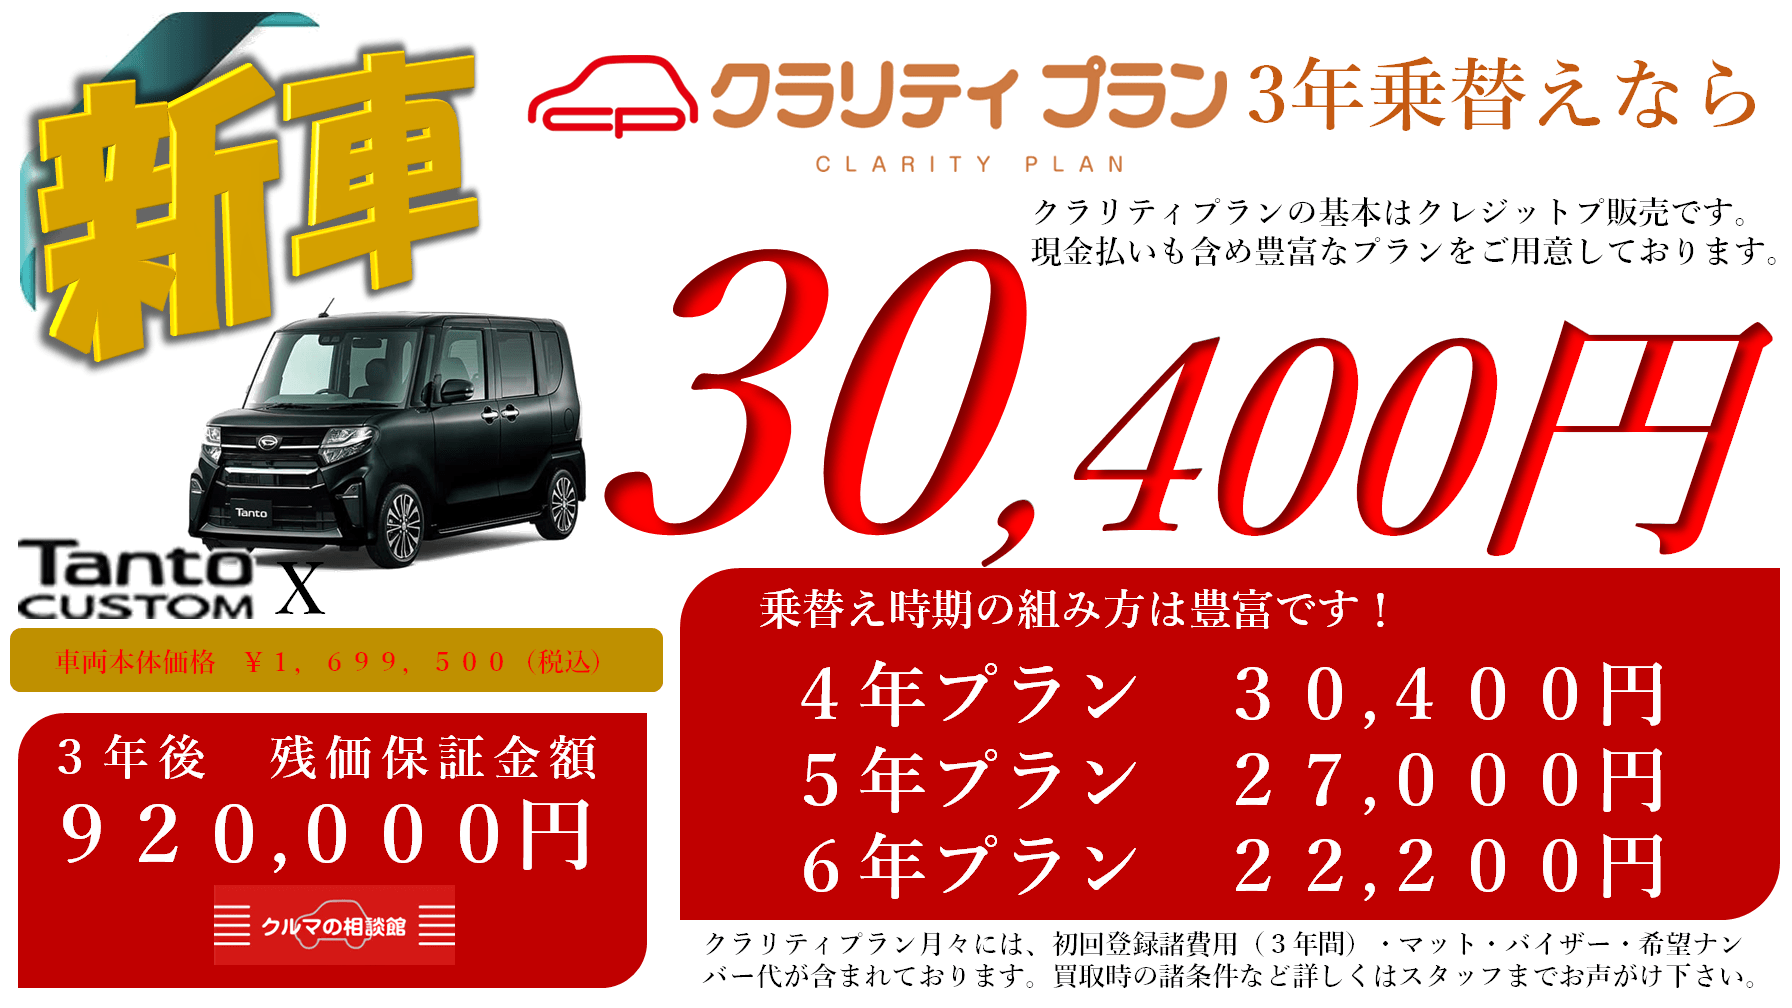 新車 Tanto CUSTOM X クラリティプラン3年乗替え 月々30,400円